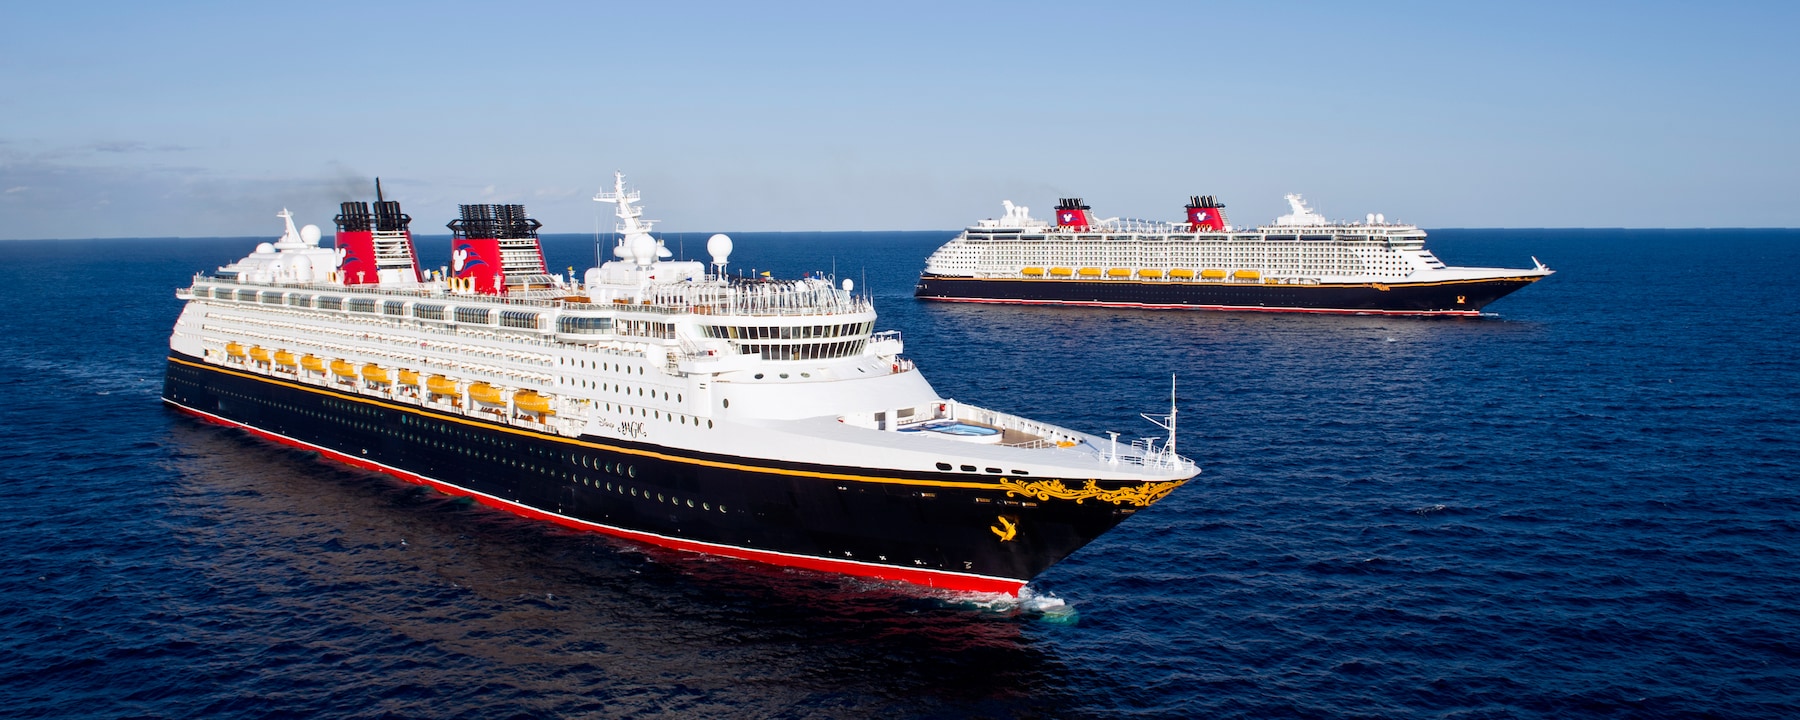 disney cruise ships registered